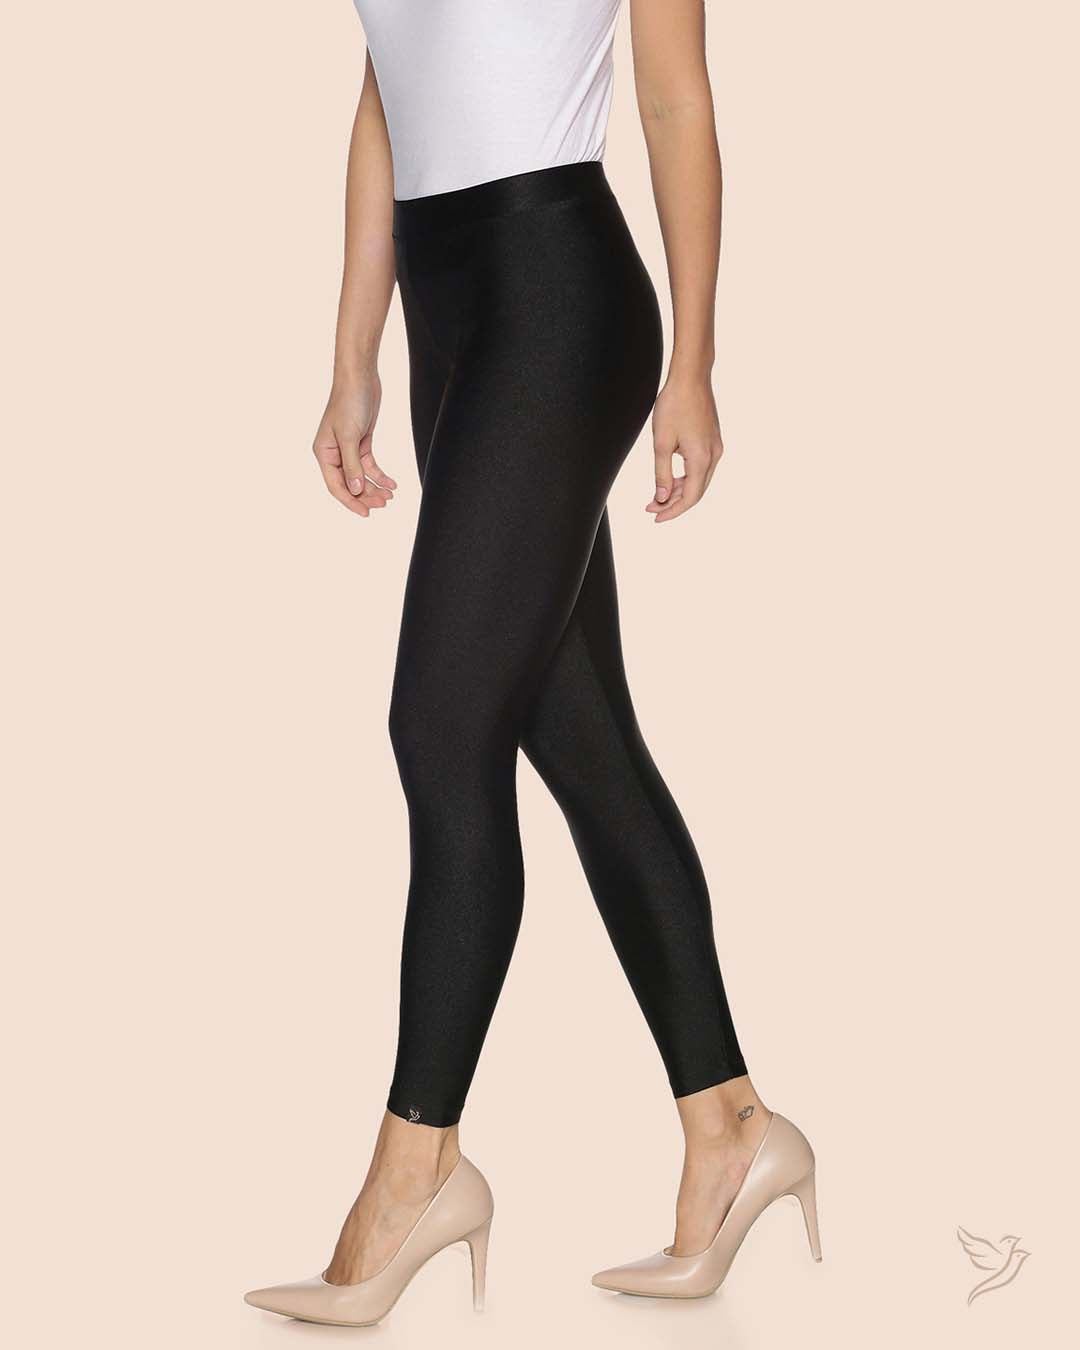  Black Pearl Shimmer Legging  for Women